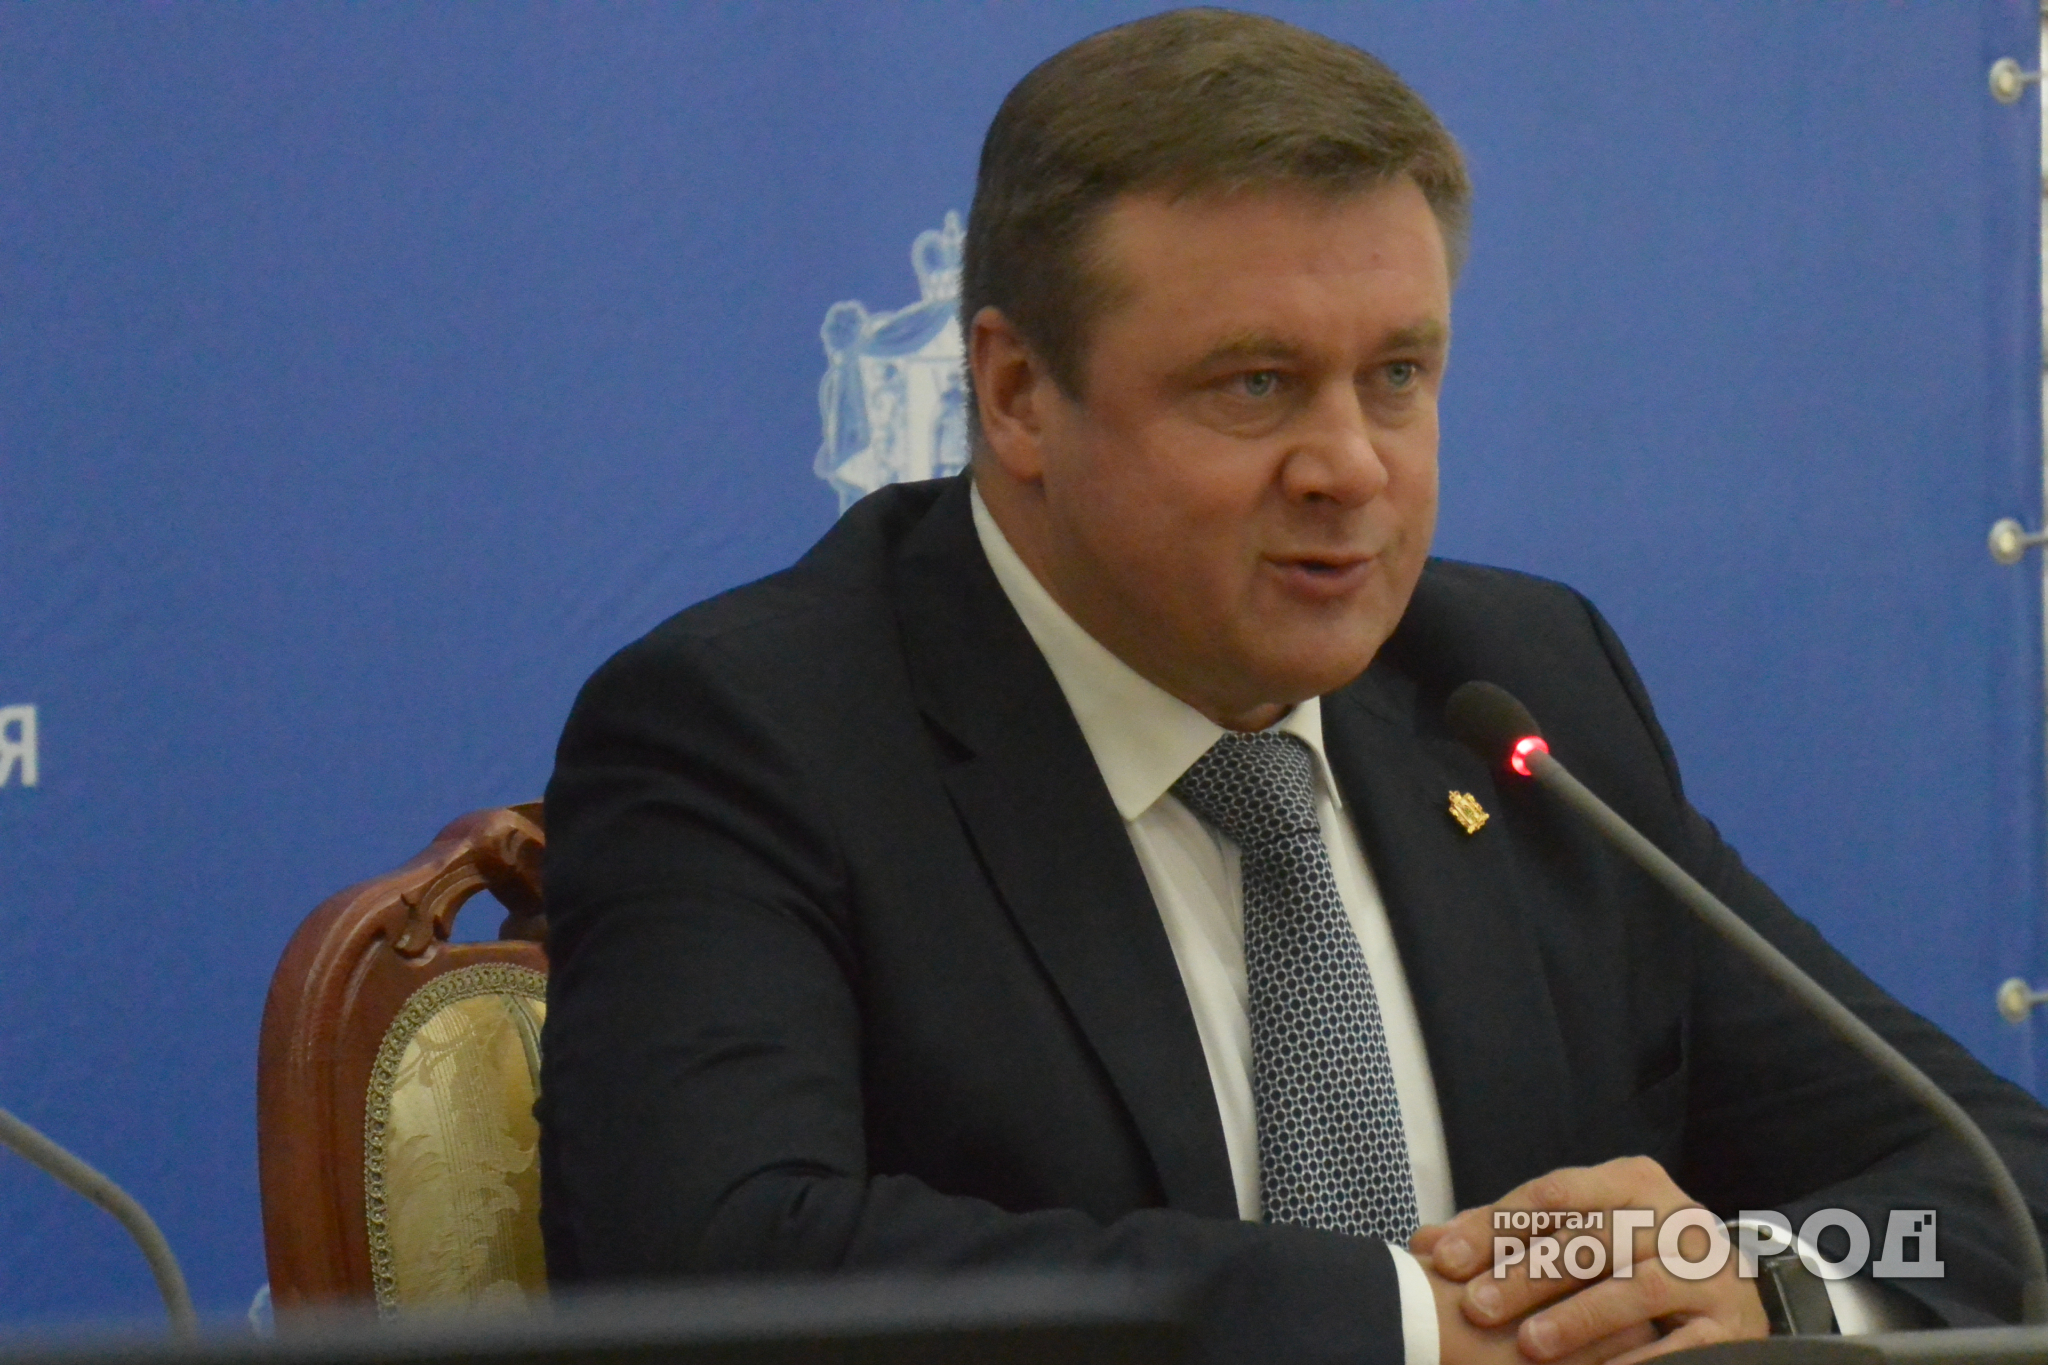 Стартовал прием вопросов на прямую линию губернатору Рязанской области